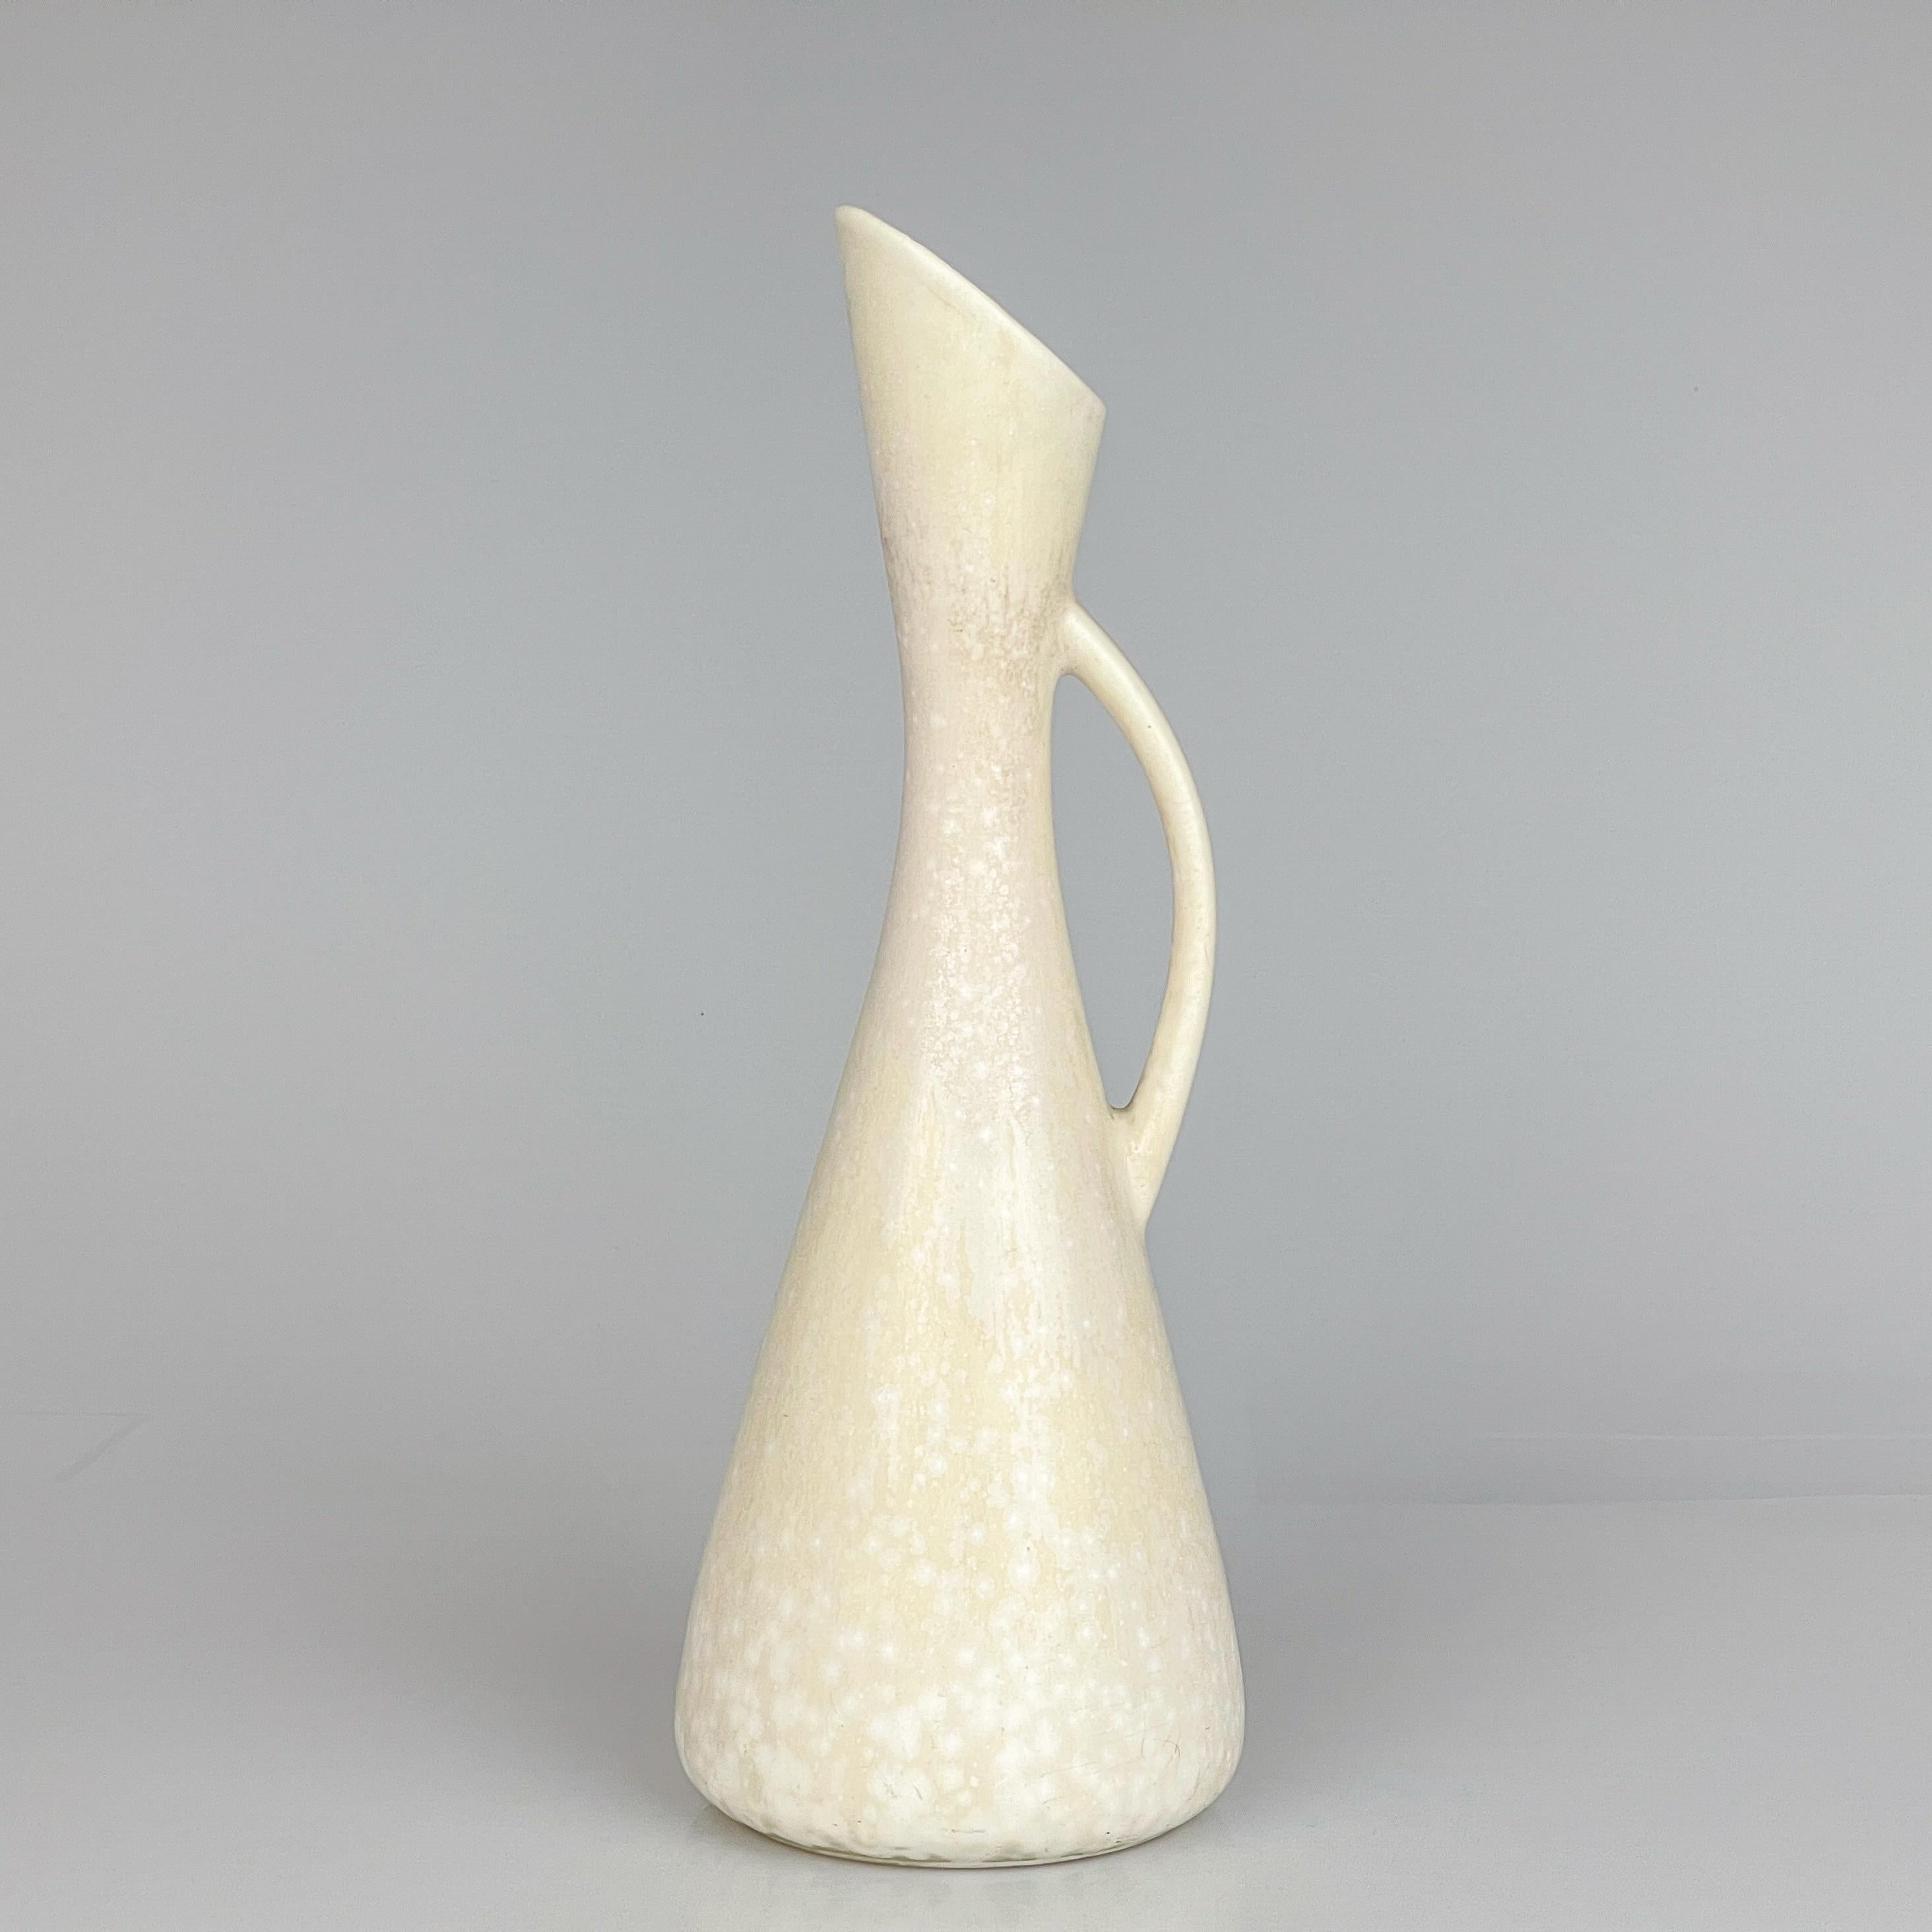 Gunnar Nylund, Steinzeugvase/-krug Rörstrand, Schweden, um 1950

Beschreibung
Eine Vase / Krug aus Steingut, Modell AUD, fertig in einem schönen weißen 